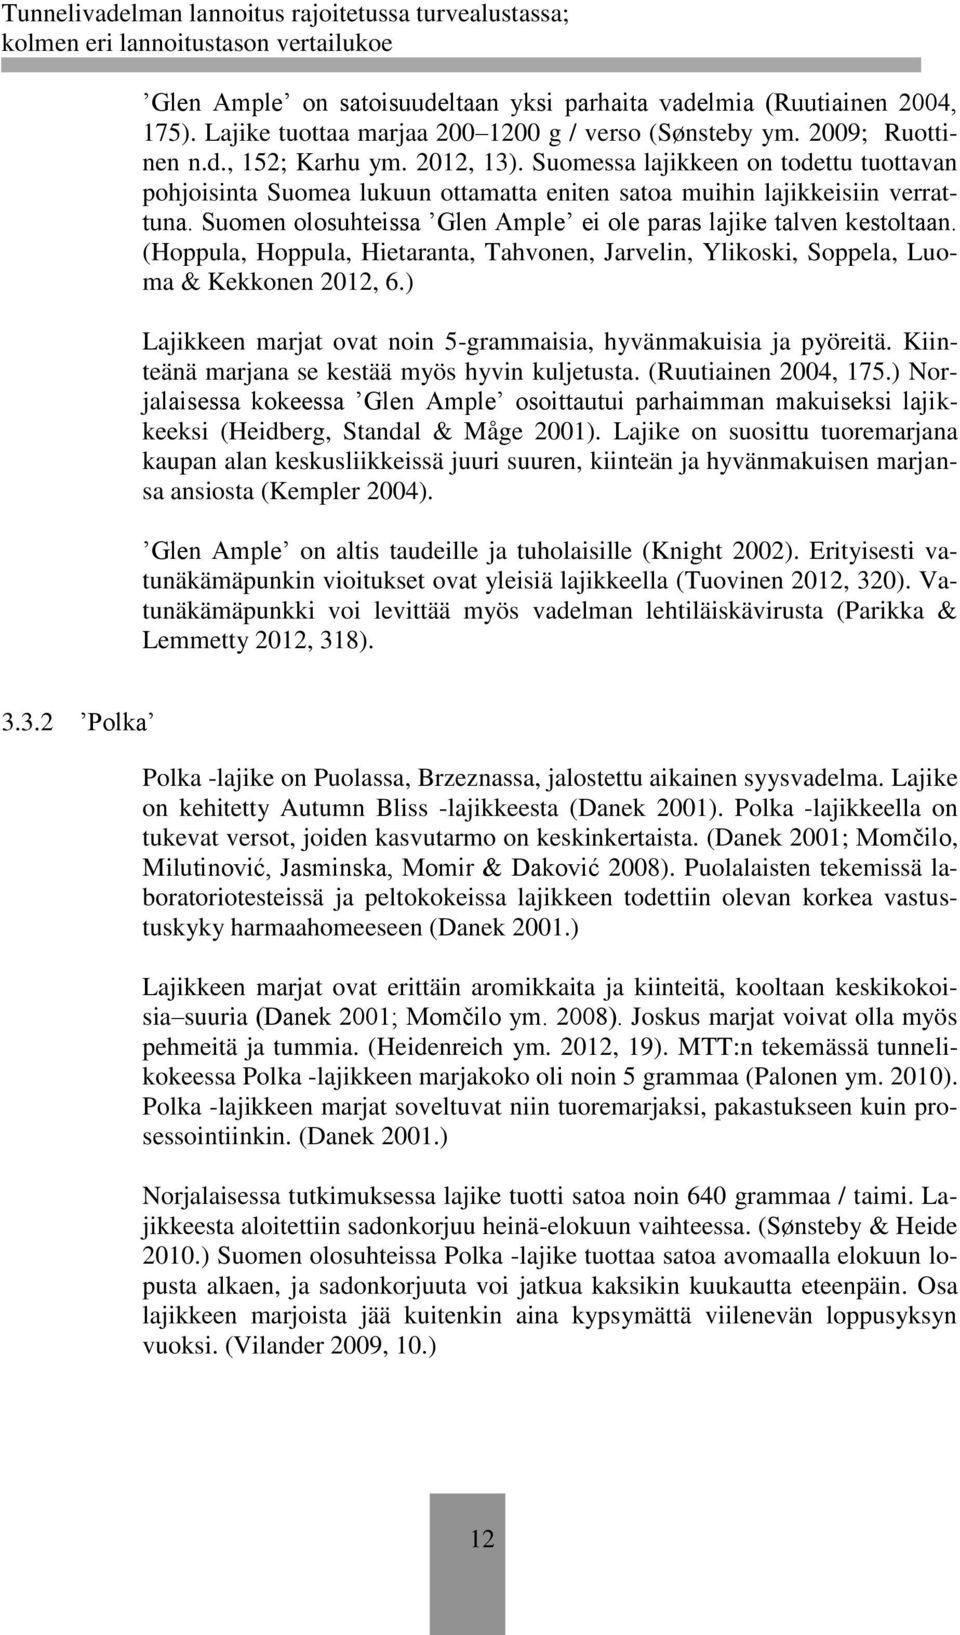 (Hoppula, Hoppula, Hietaranta, Tahvonen, Jarvelin, Ylikoski, Soppela, Luoma & Kekkonen 2012, 6.) Lajikkeen marjat ovat noin 5-grammaisia, hyvänmakuisia ja pyöreitä.